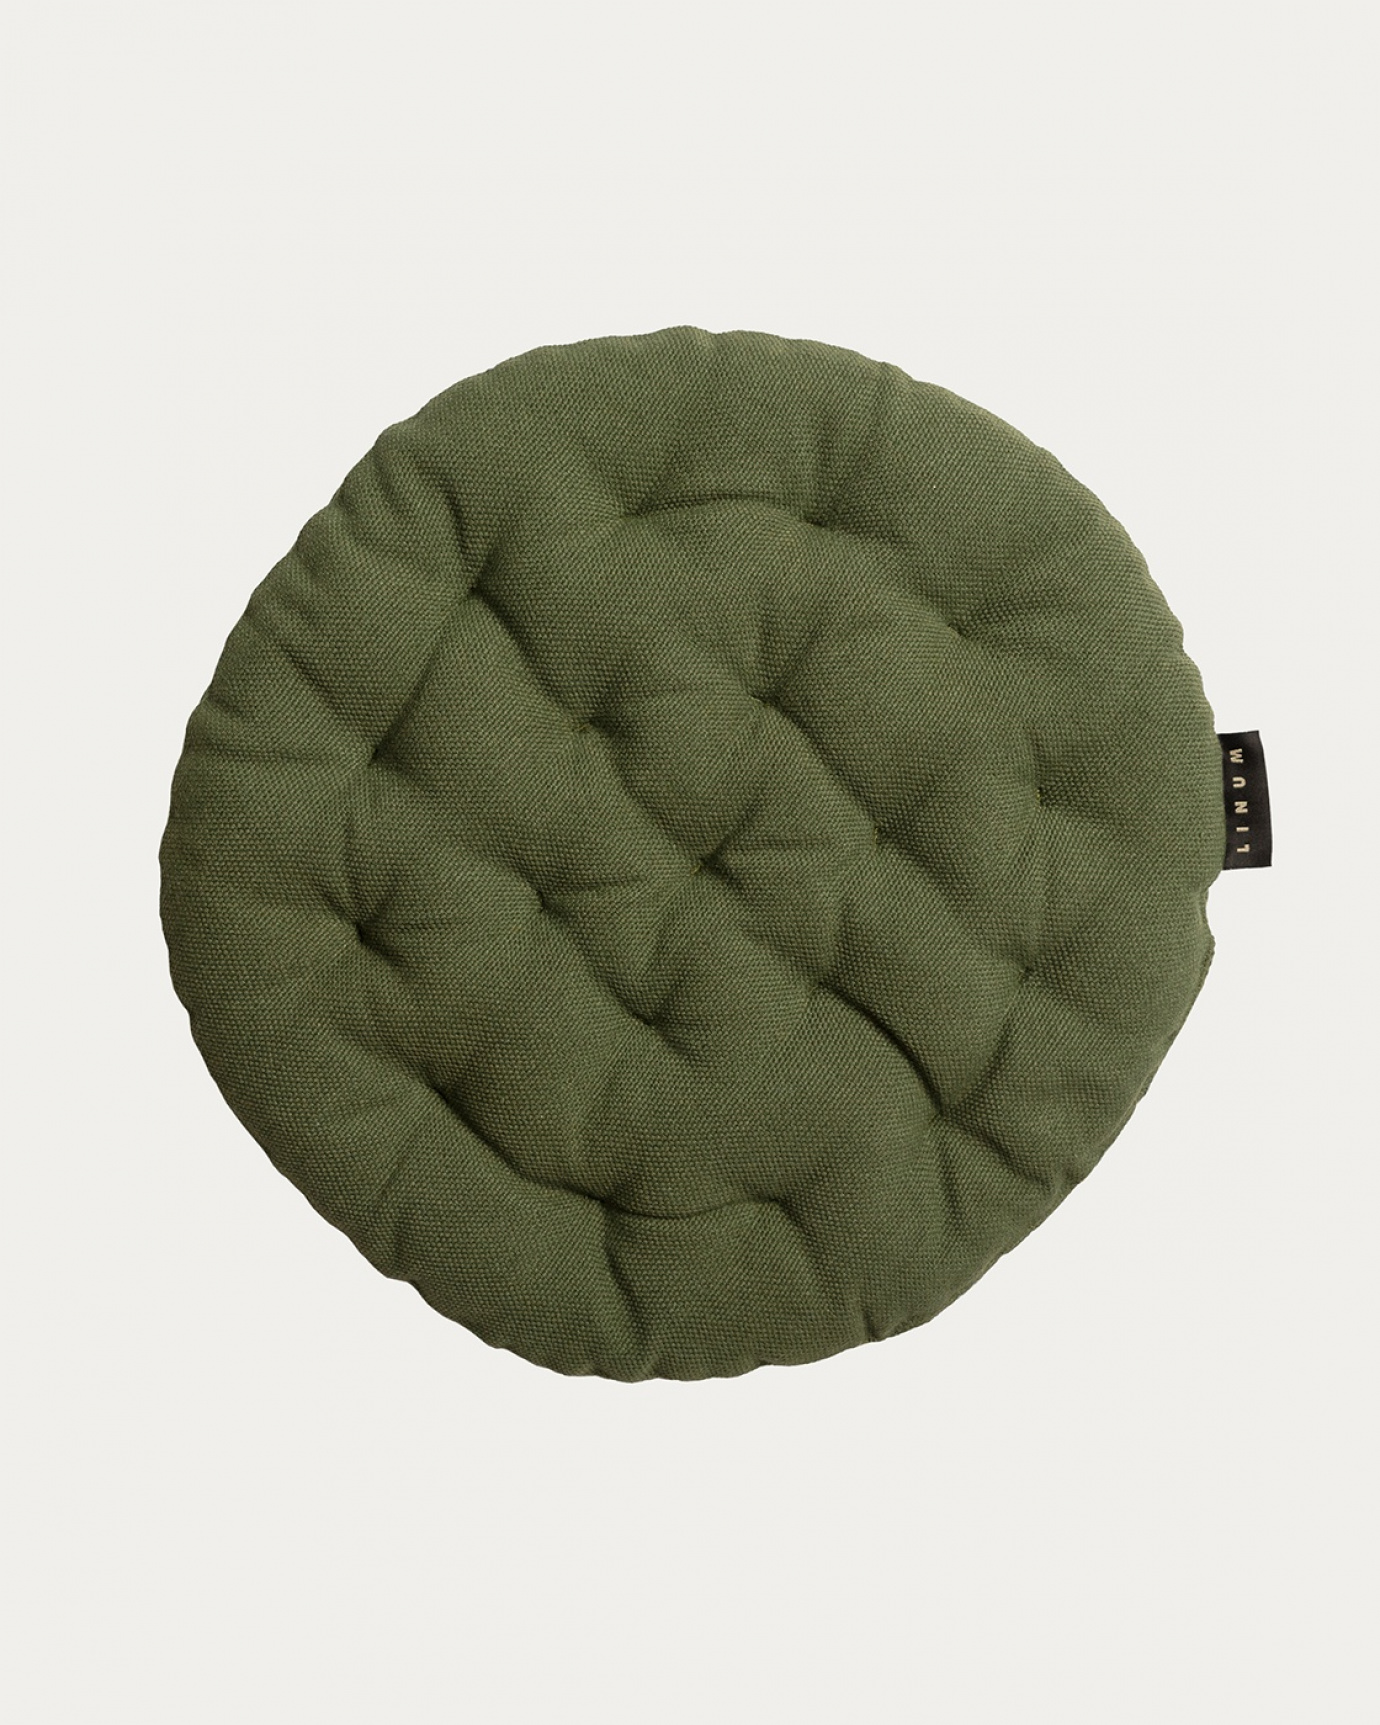 Immagine prodotto verde oliva scuro PEPPER cuscini sedie di cotone con imbottitura in poliestere di LINUM DESIGN. Dimensioni ø37 cm.